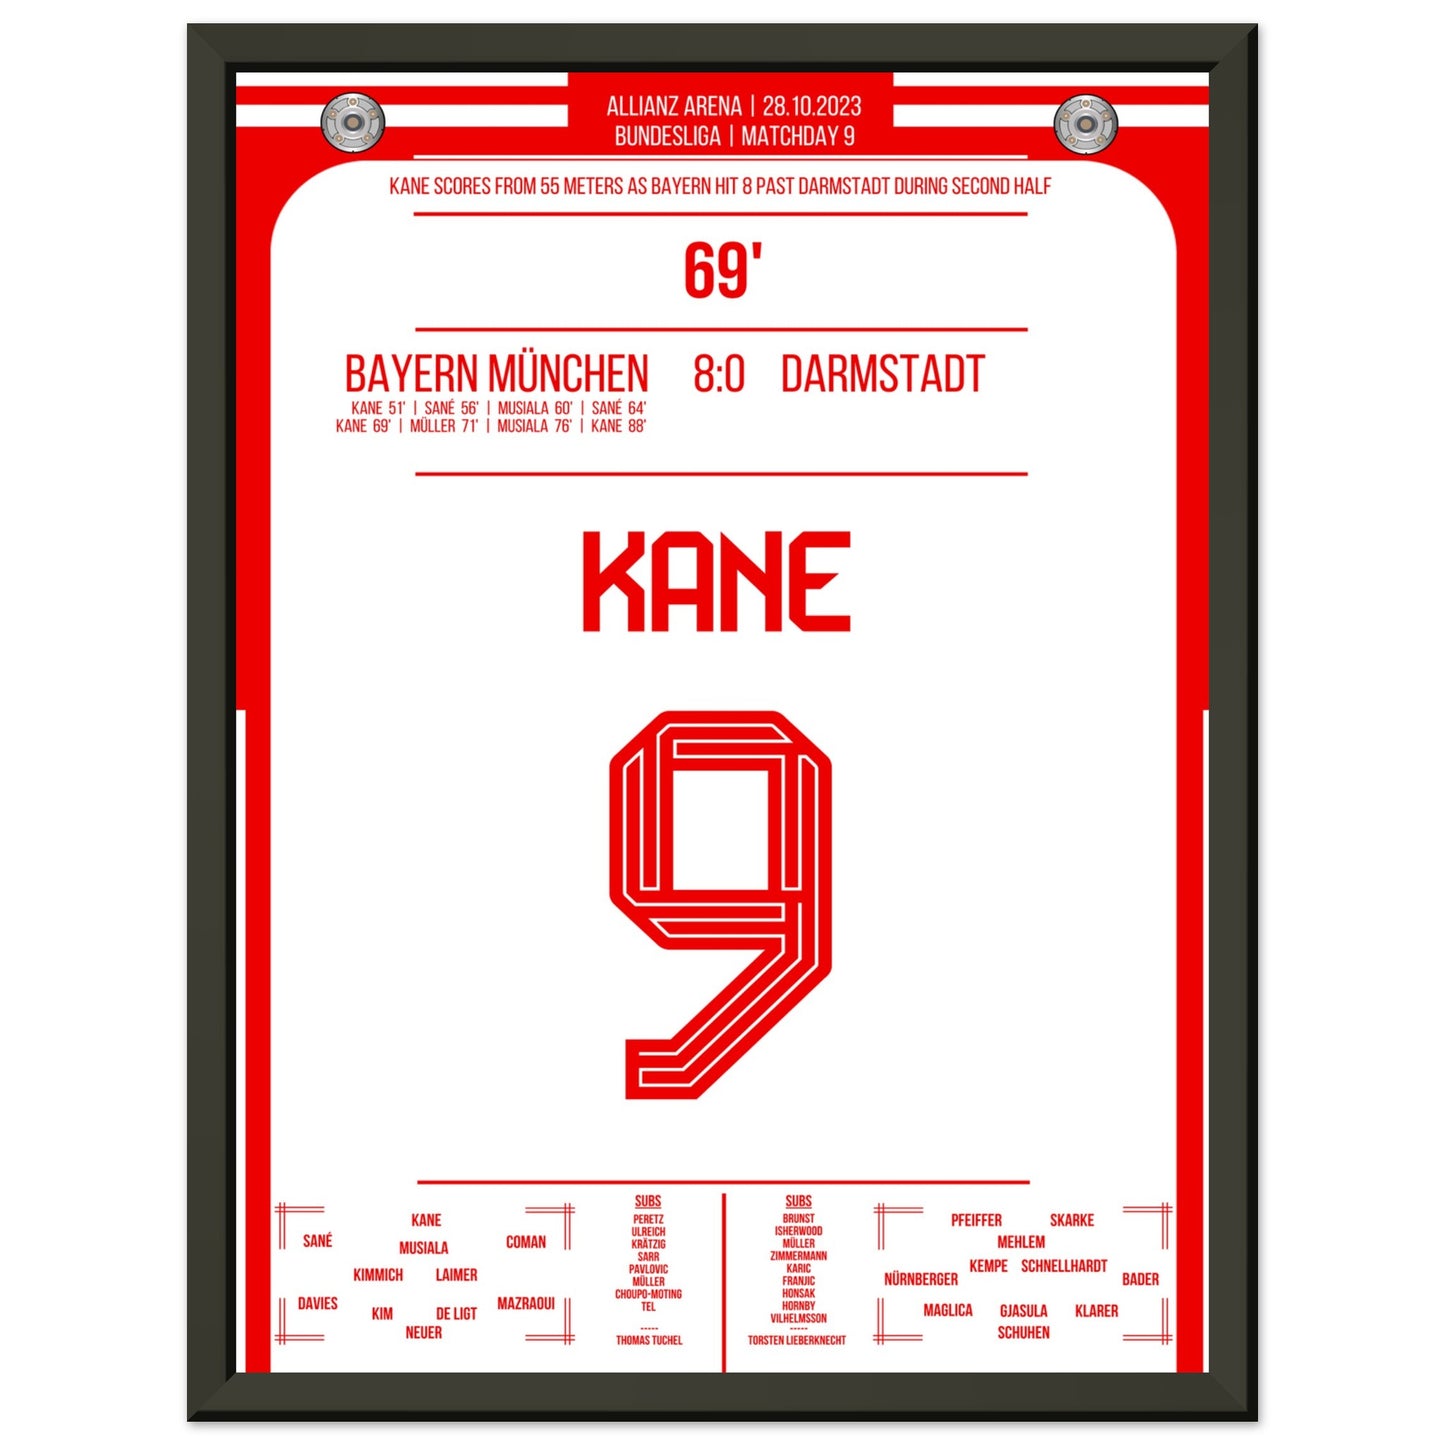 Kane's Traumtor aus 55 Metern bei 8-0 Sieg gegen Darmstadt 30x40-cm-12x16-Schwarzer-Aluminiumrahmen